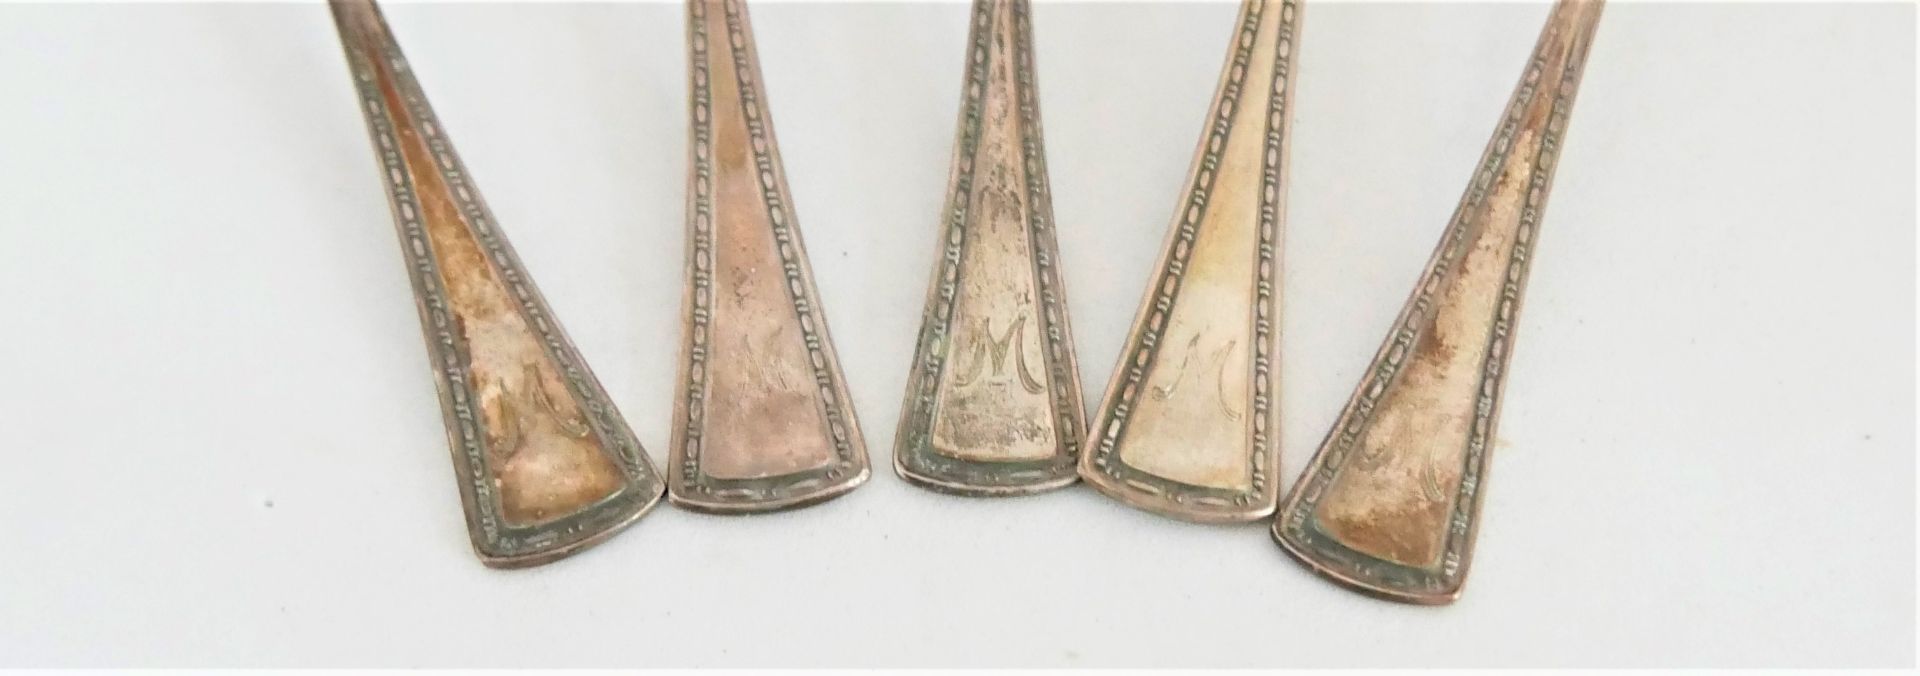 5 Moccalöffel, gepunzt 800er Silber, teilweise vergoldet, gleiche Serie Gewicht ca. 64,3 gr - Image 2 of 3